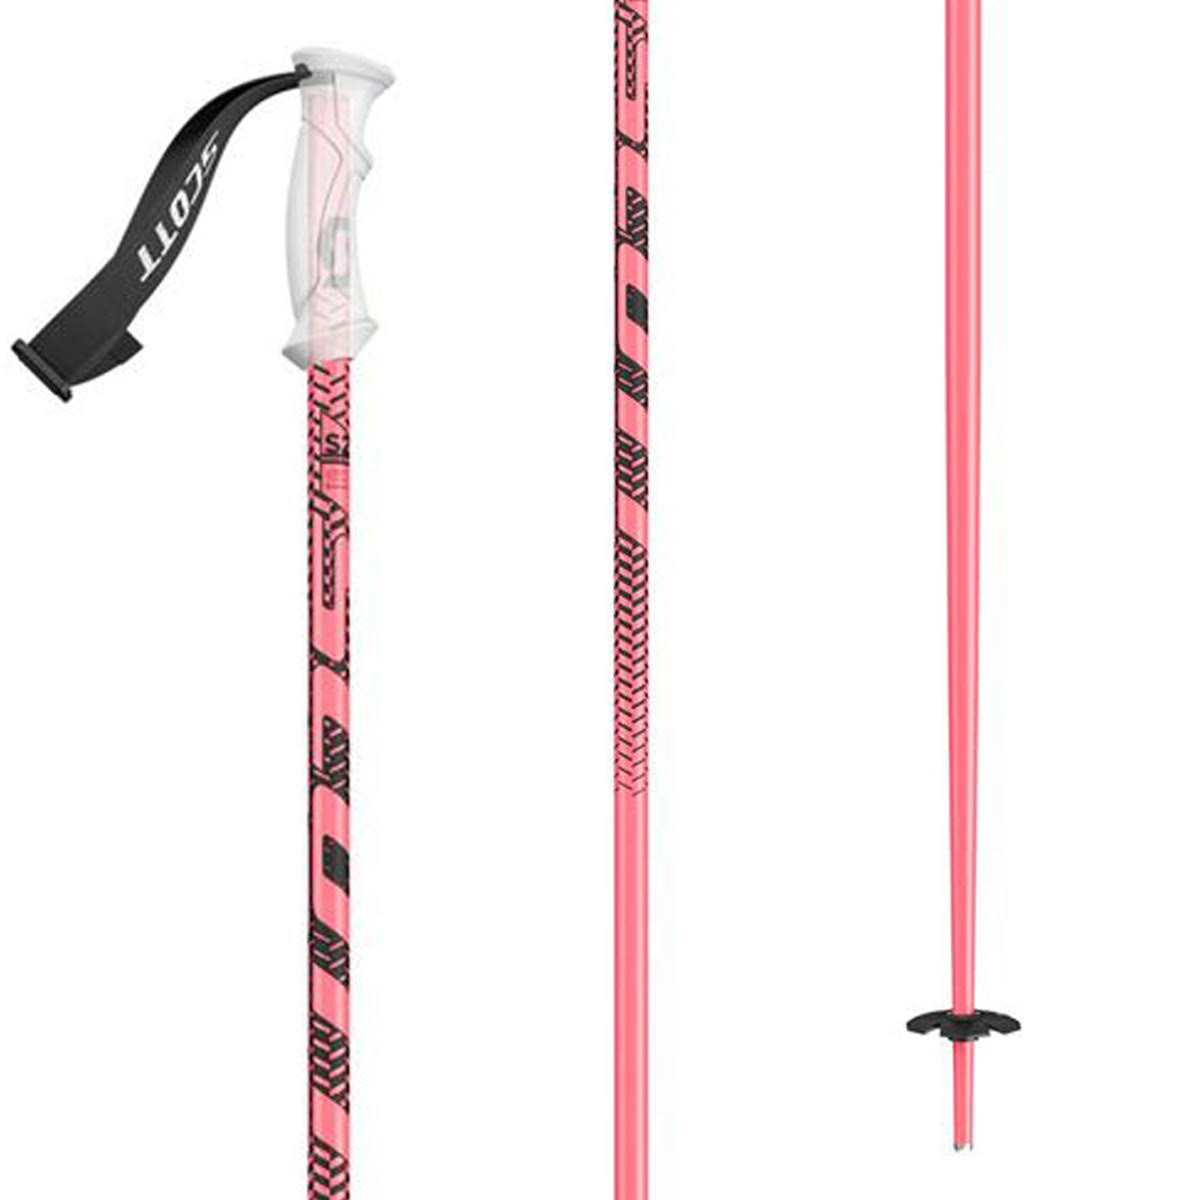 Scott 540 Ski Poles Pink, 125cm